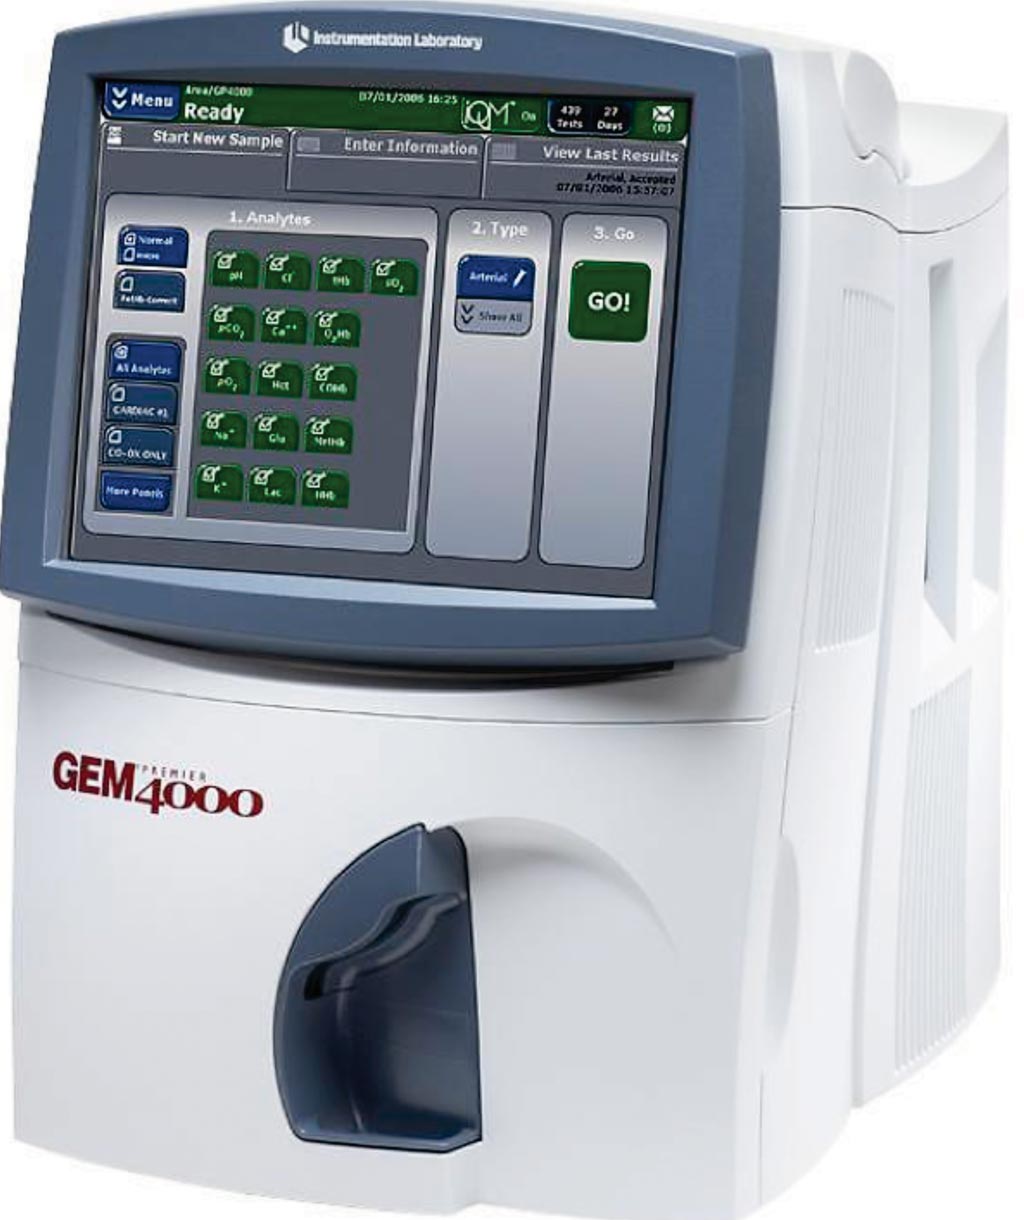 Imagen: El analizador de sangre total GEM 4000 (Fotografía cortesía de Werfen UK).